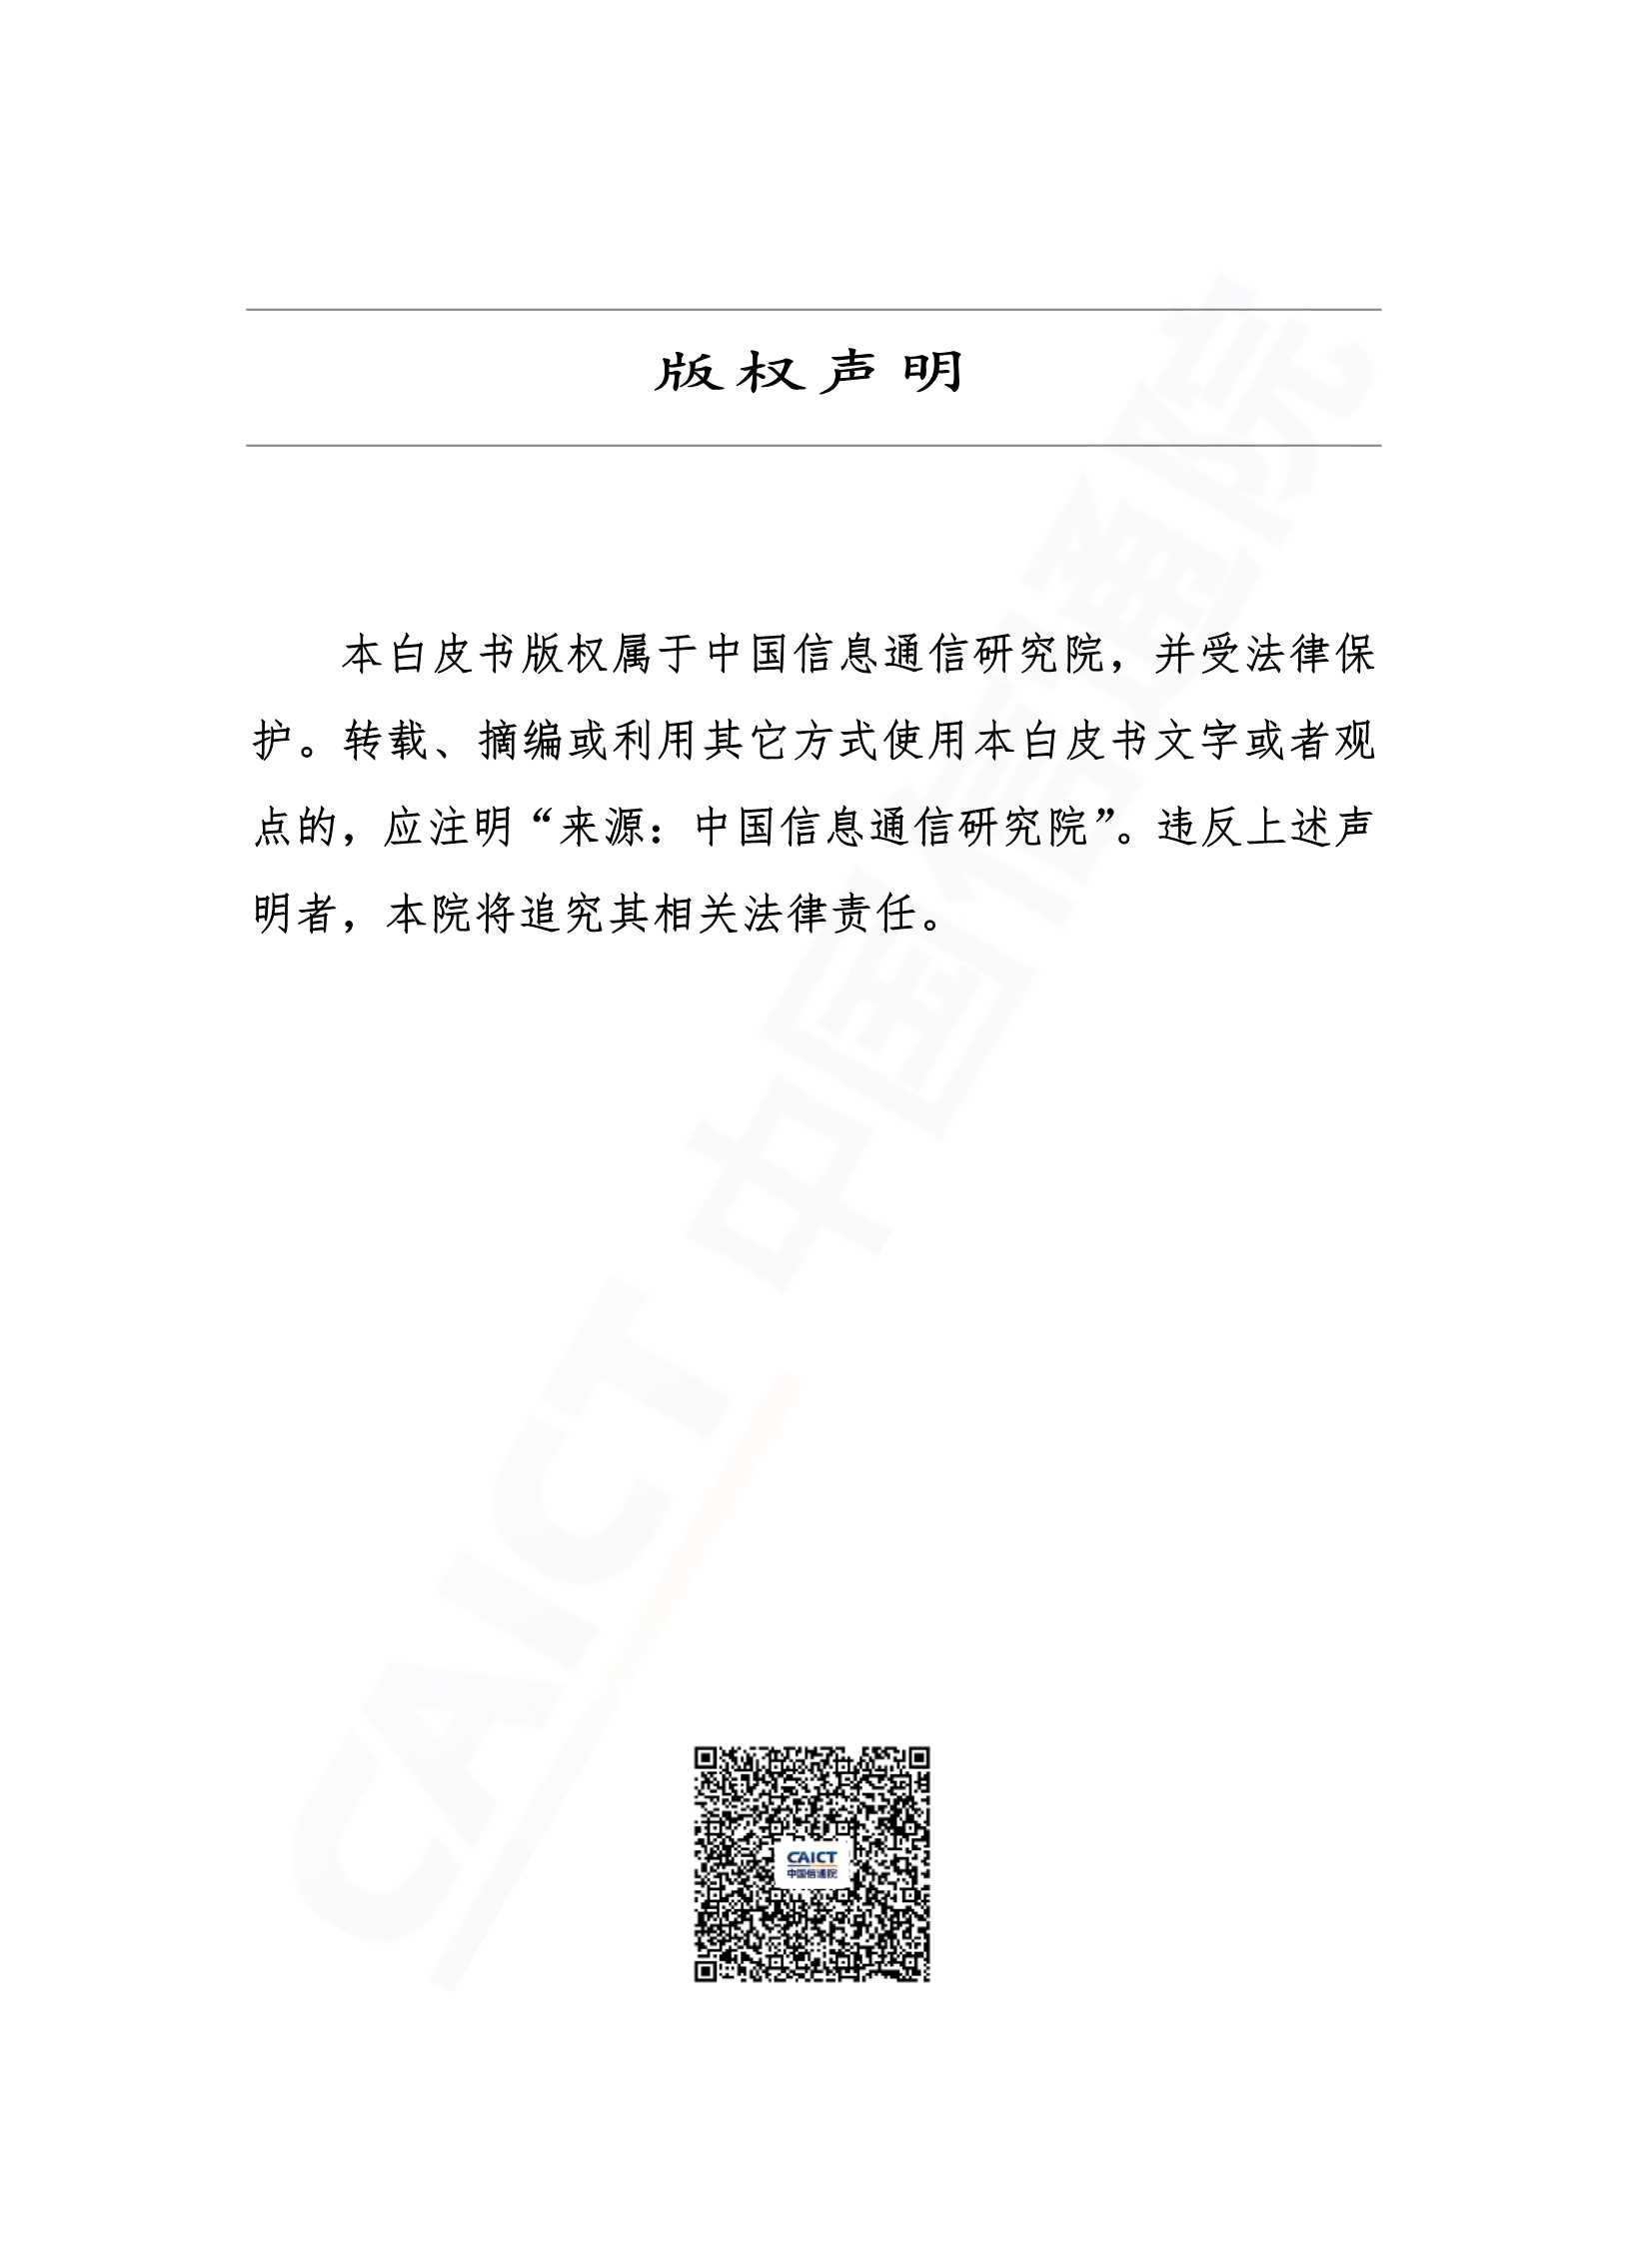 信通院-中国工业经济形势展望-2021.12-46页